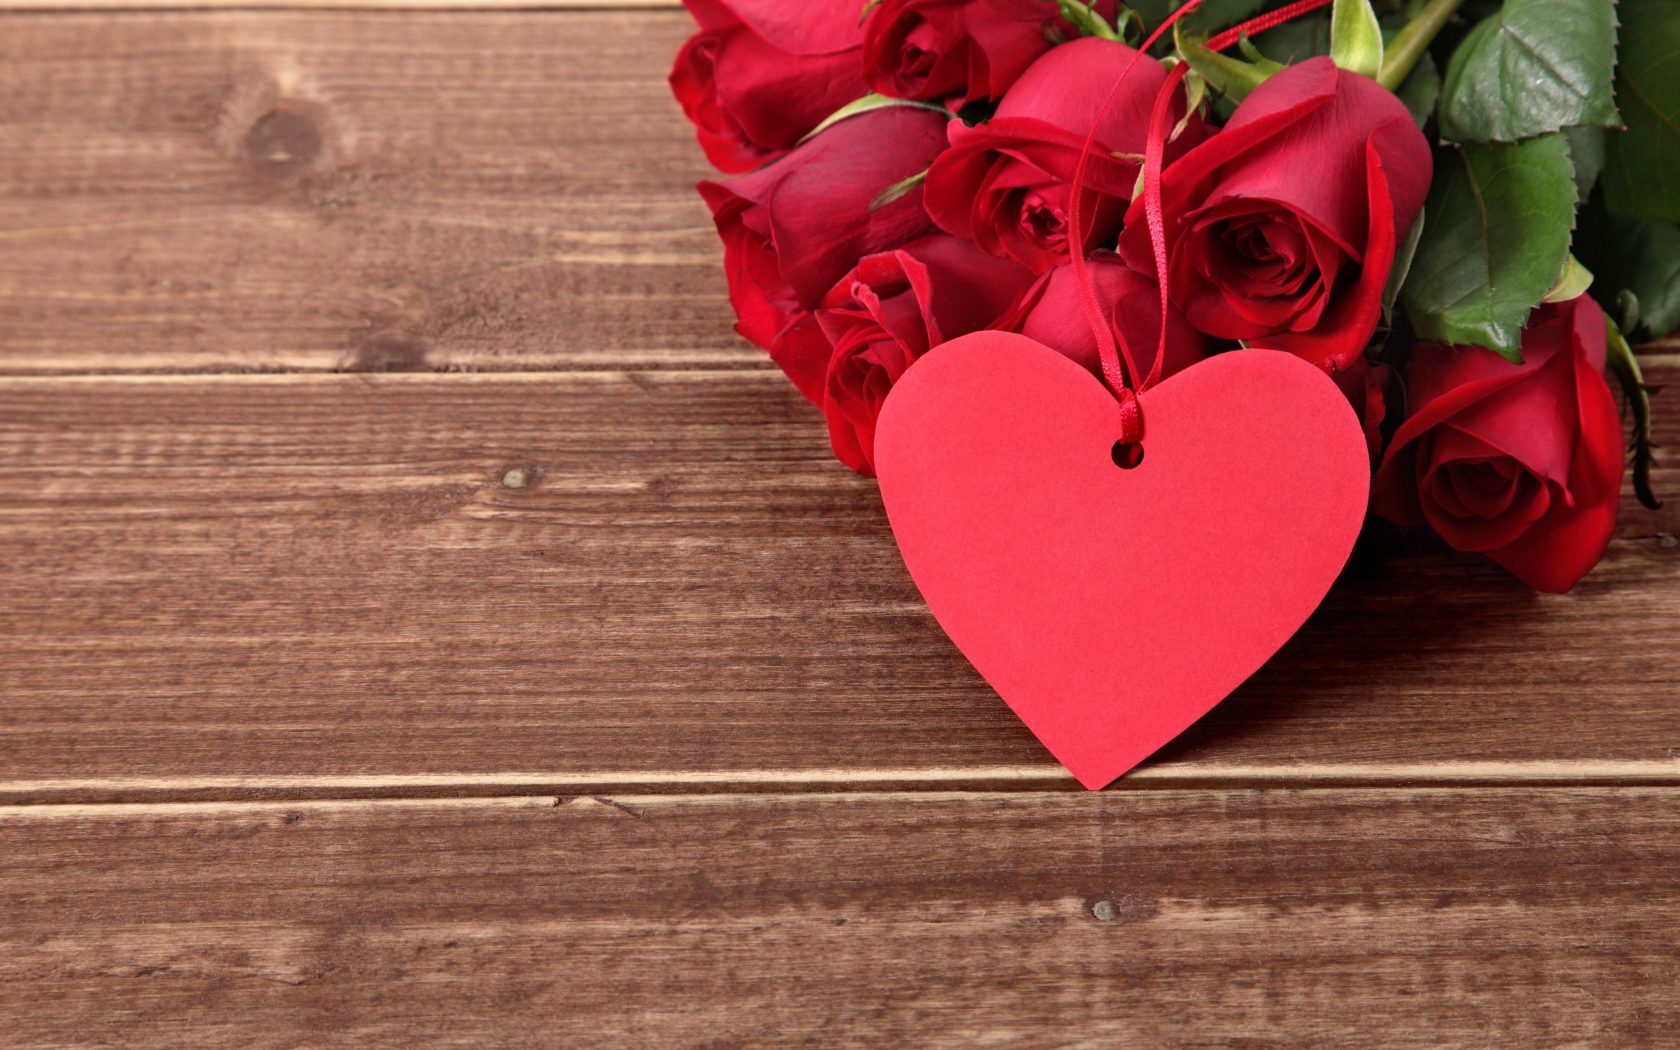 Букет красных роз на деревянном столе с красным сердцем